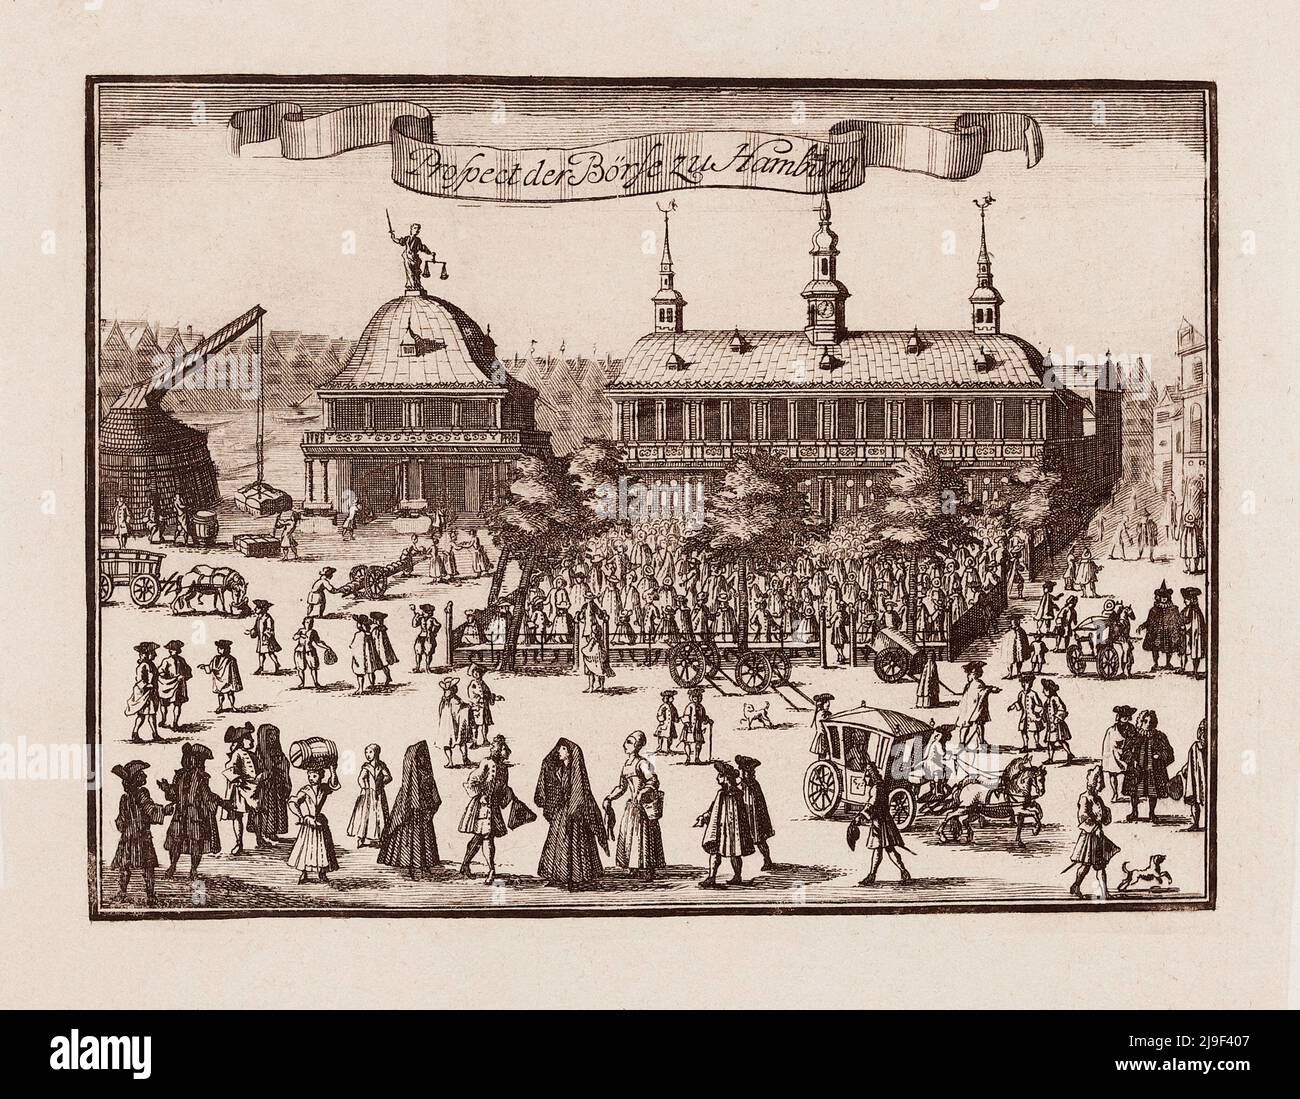 Grabado del siglo 18th de la perspectiva de la Bolsa de Hamburgo. La Bolsa de Hamburgo (en alemán: Hamburger Börse) es la bolsa de valores más antigua Foto de stock